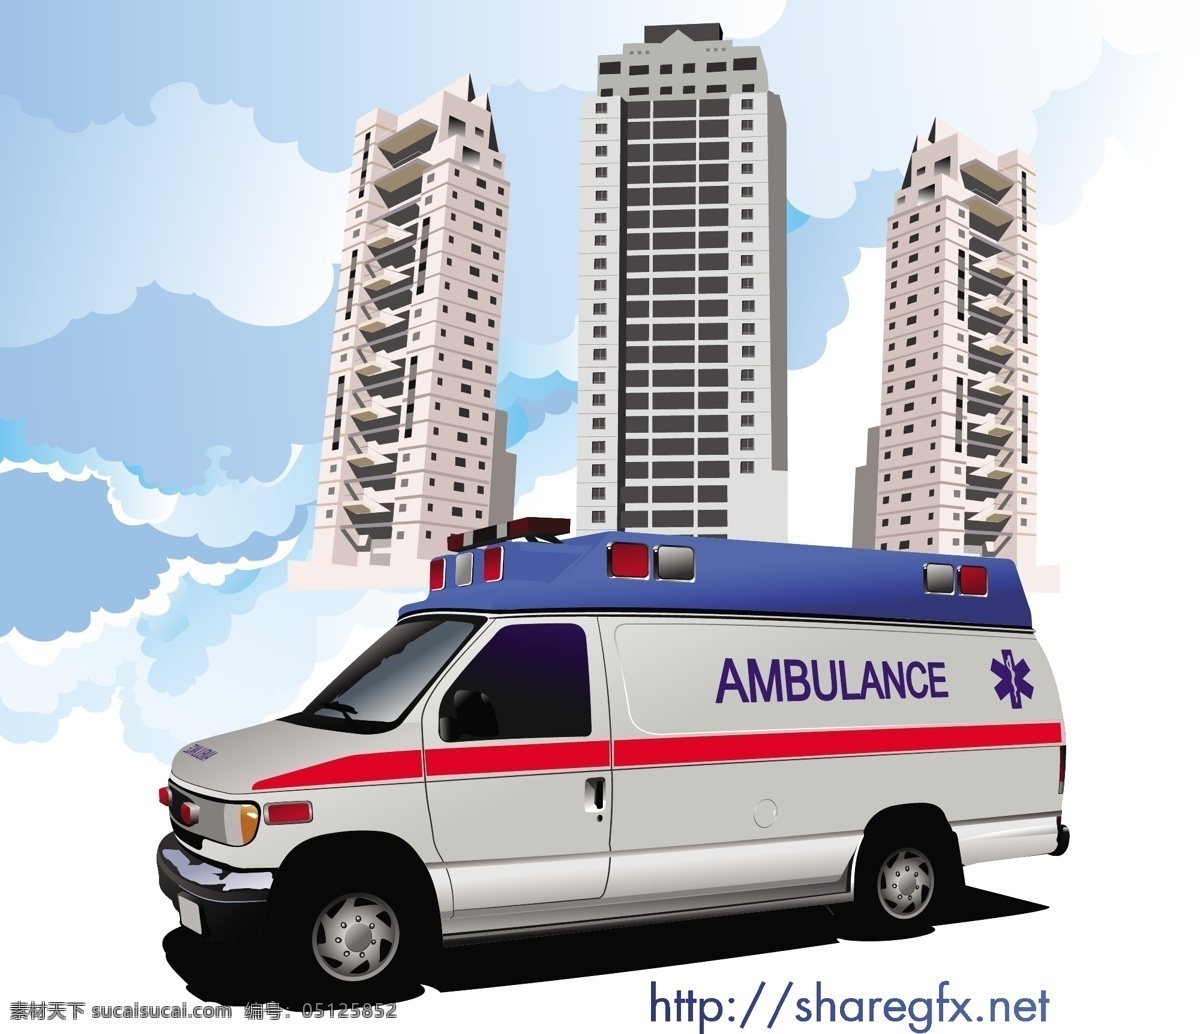 辆 救护车 矢量 紧急 车辆 医院 摩天大楼 矢量素材 紧急车辆 运输载体 矢量图 日常生活